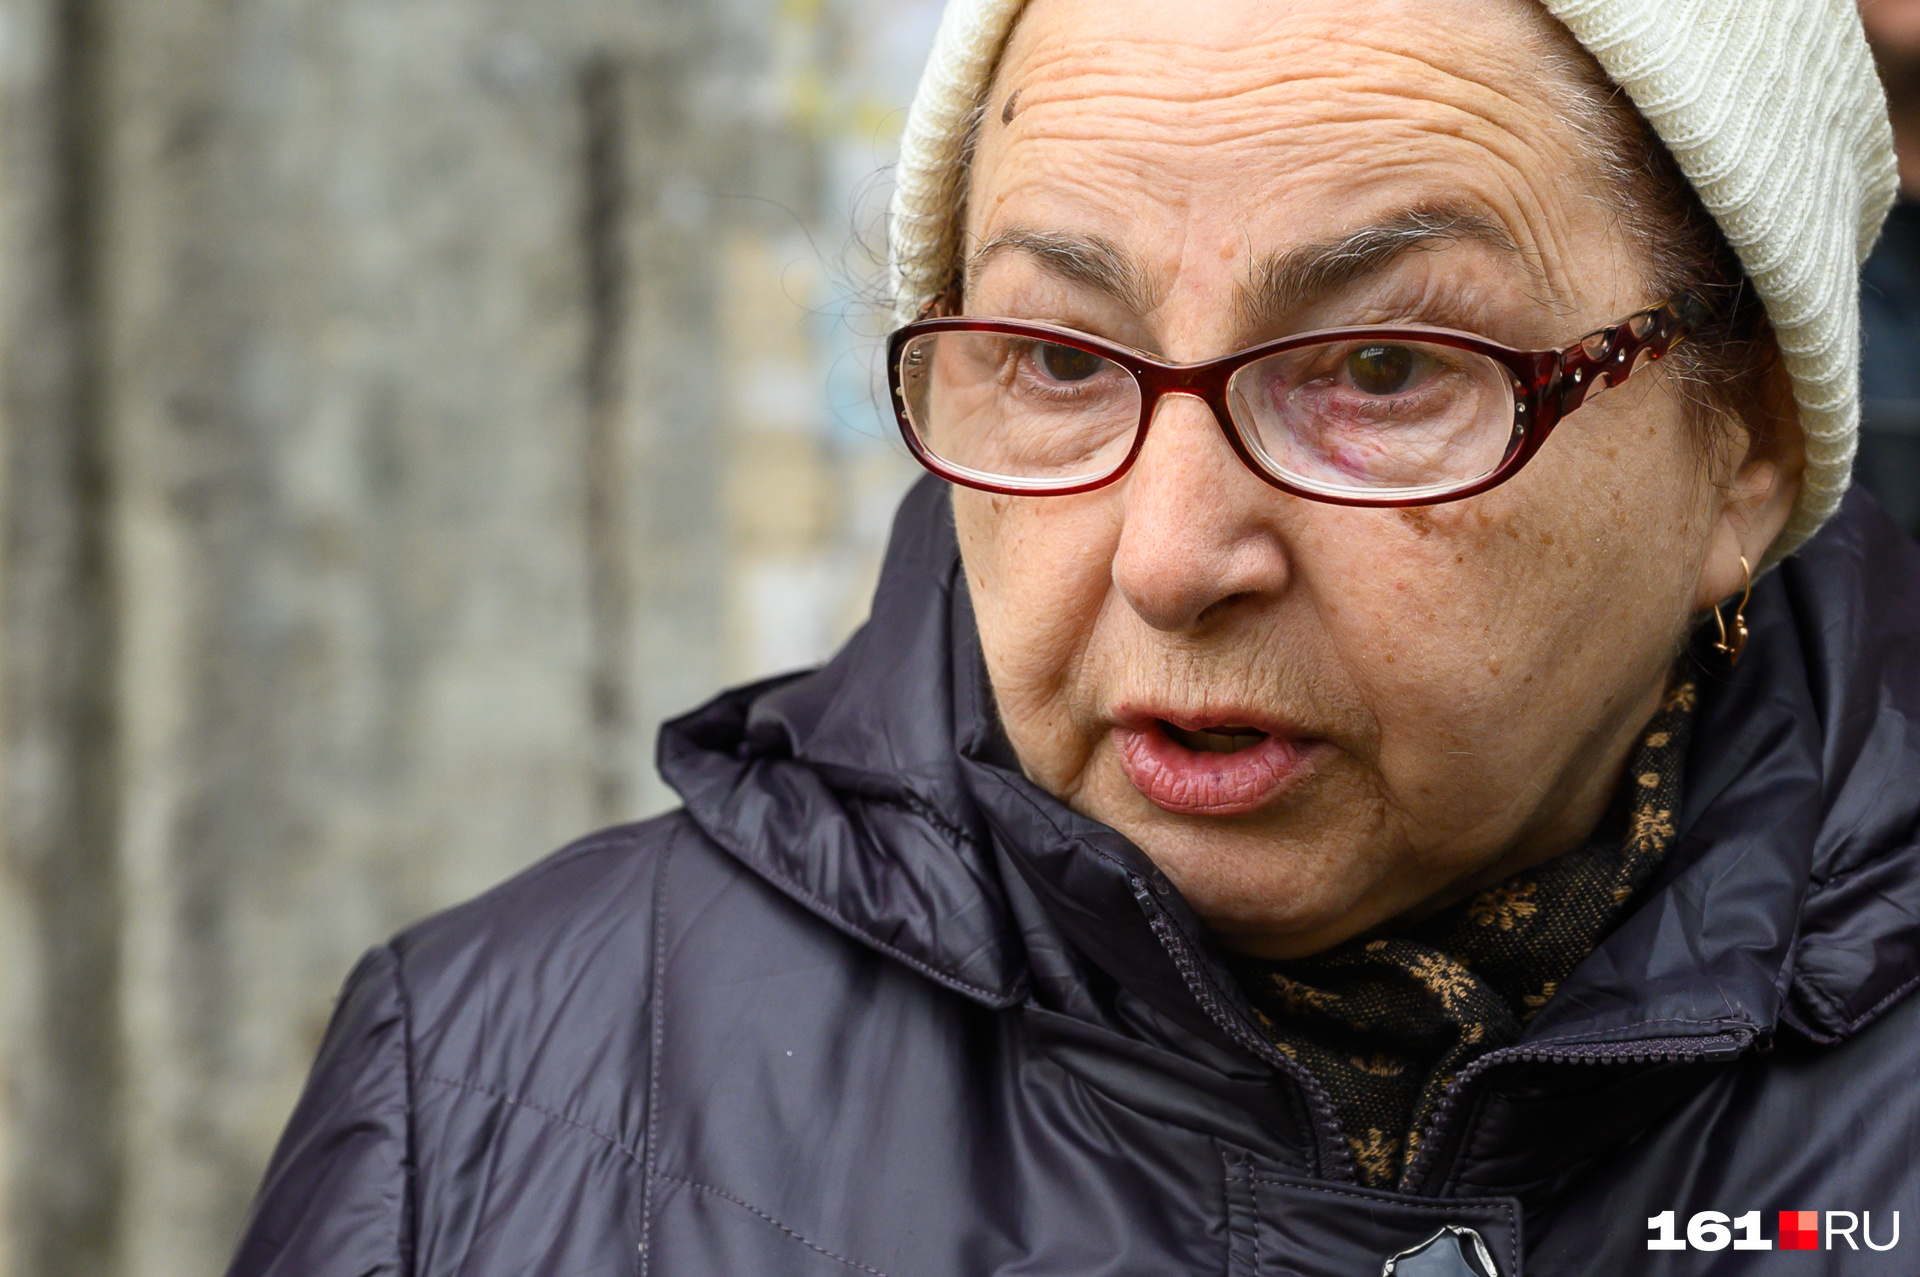 Элеонора Сергиенко — заслуженный ветеран труда. Пенсионерка считает, что власти унижают их, заставляя на старости оказаться на улице